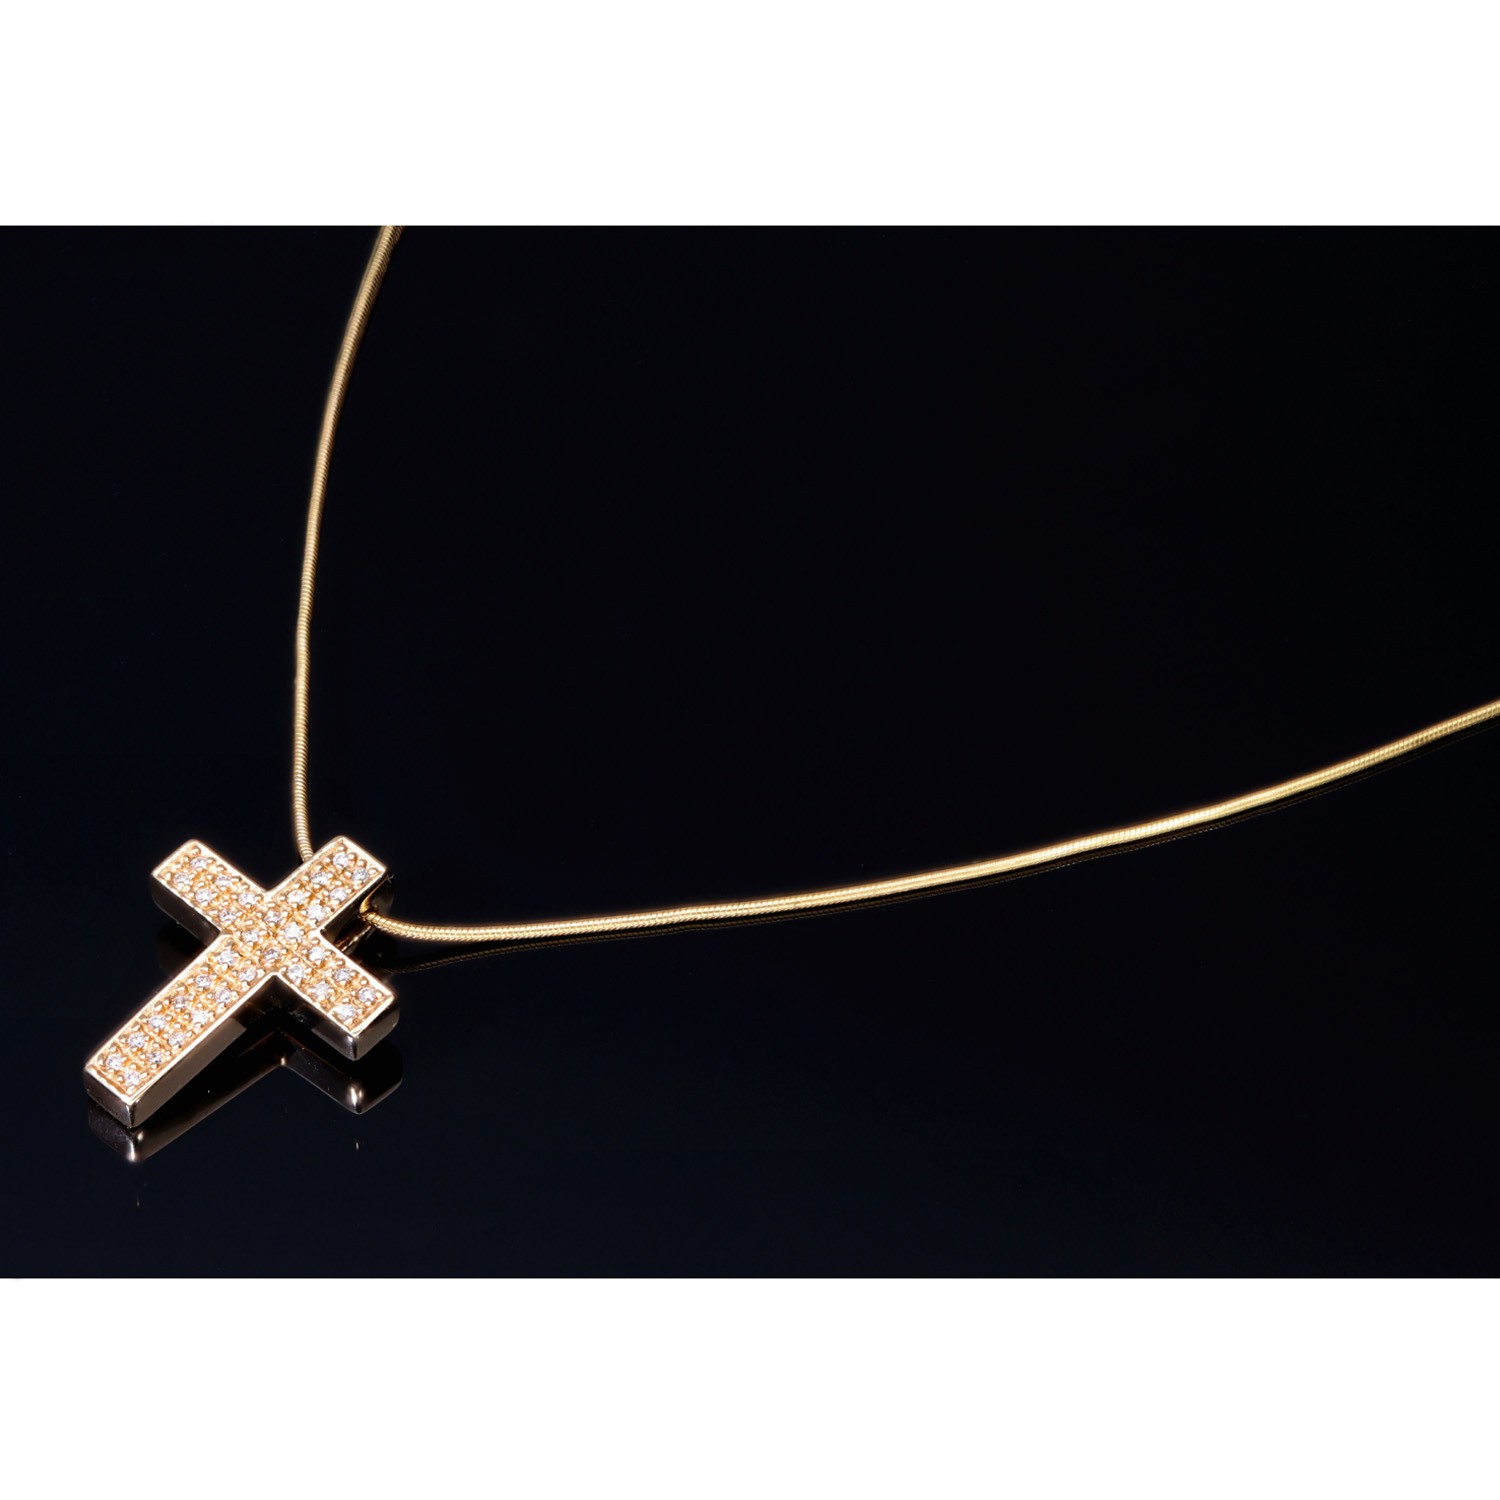 Halskette und Kreuz mit Gold in sensburg-aurum Zirkonia 585 - 14K